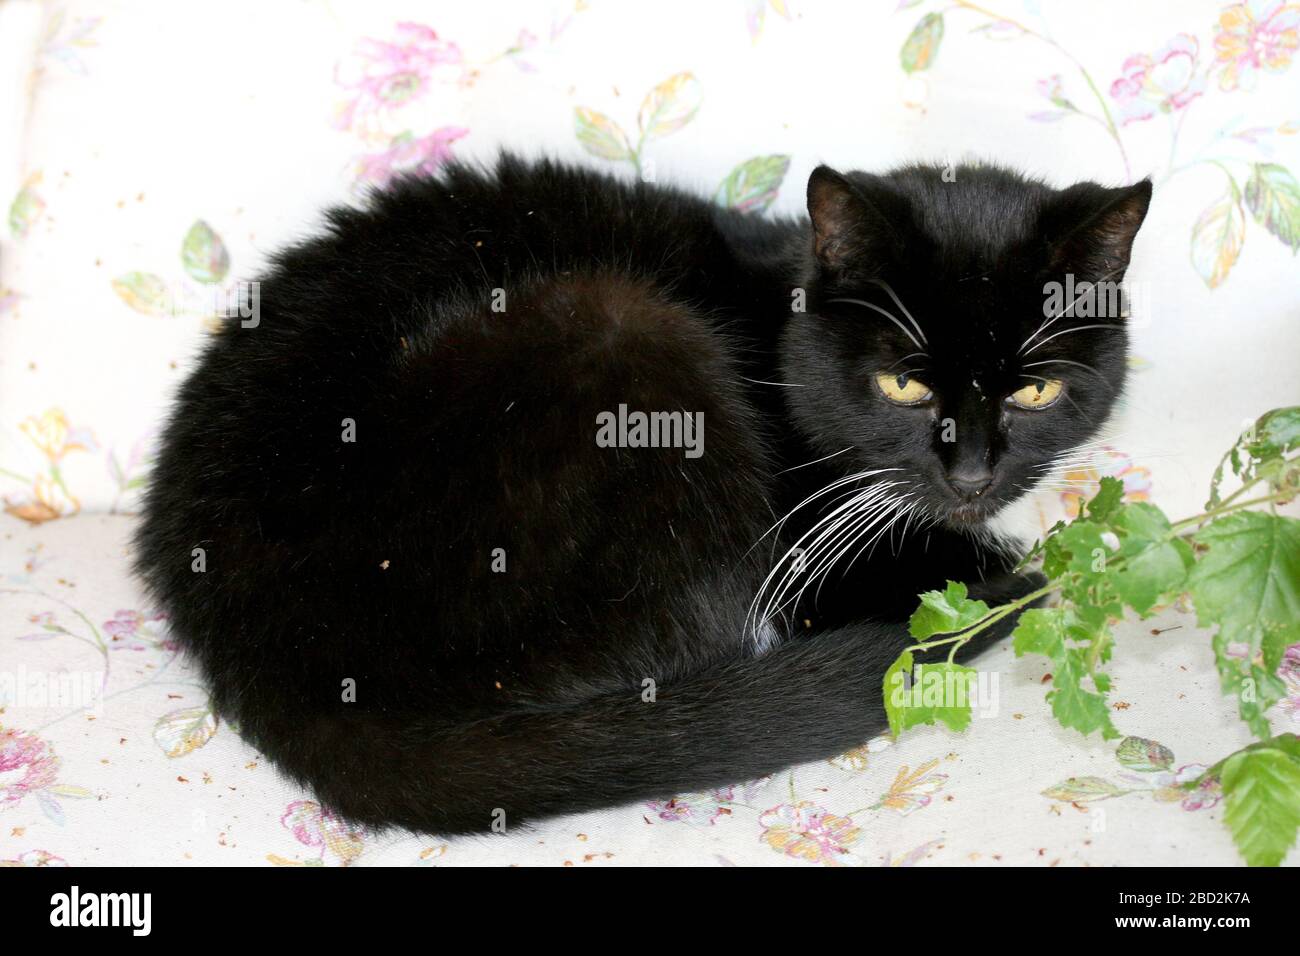 Black cat sleeping in the garden on a garden chairSchwarze Katze schläft im Garten auf einem Gartenstuhl Stock Photo